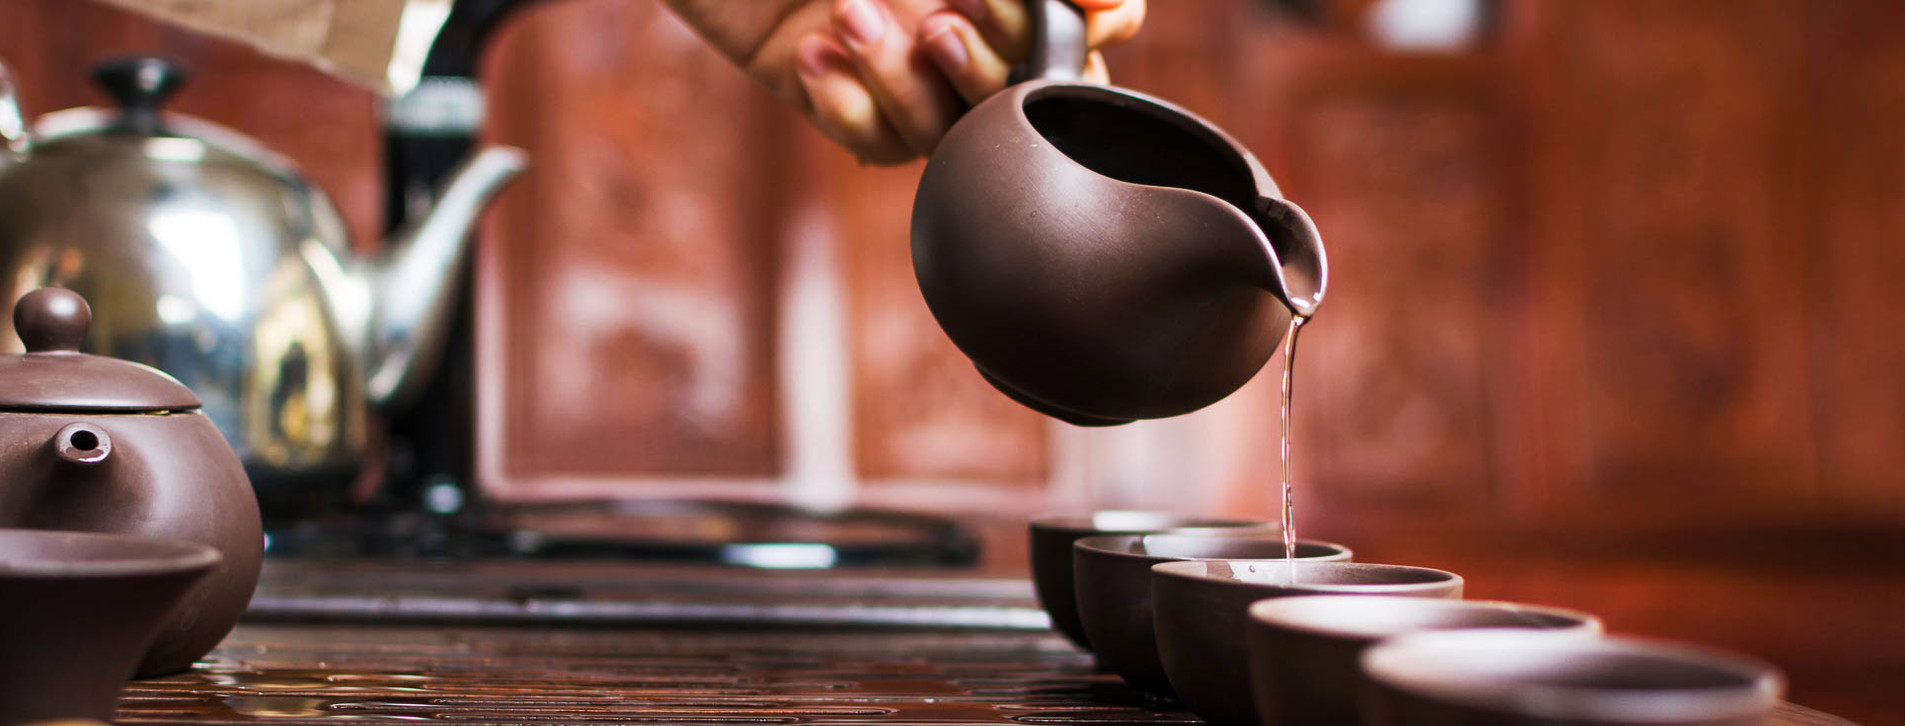 Пить чай и худеть: Пуэр для борьбы с лишними килограммами